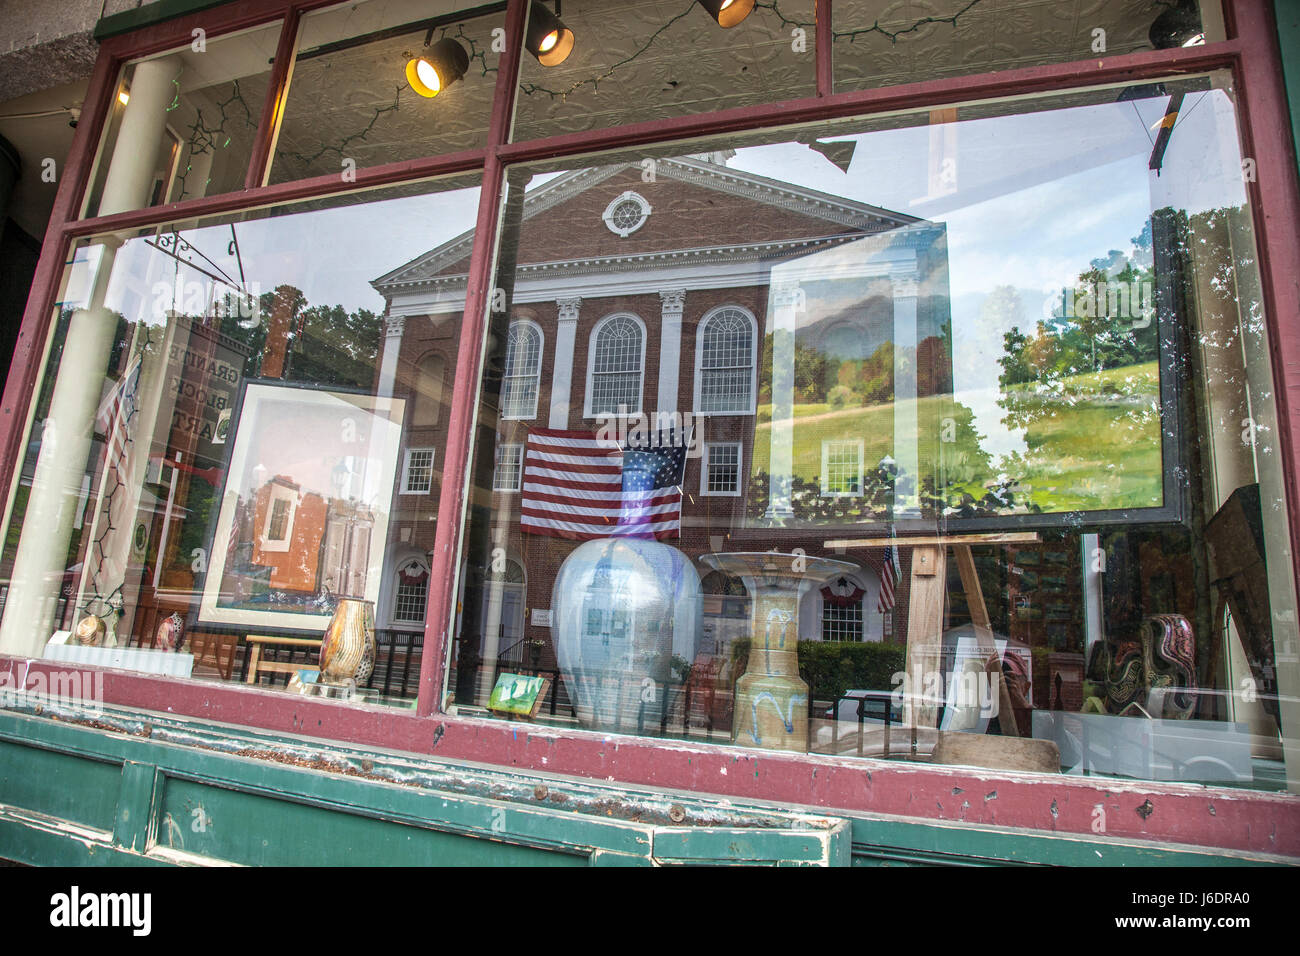 El Town House reflejado en un escaparate en Peterborough, Nueva Hampshirew Foto de stock